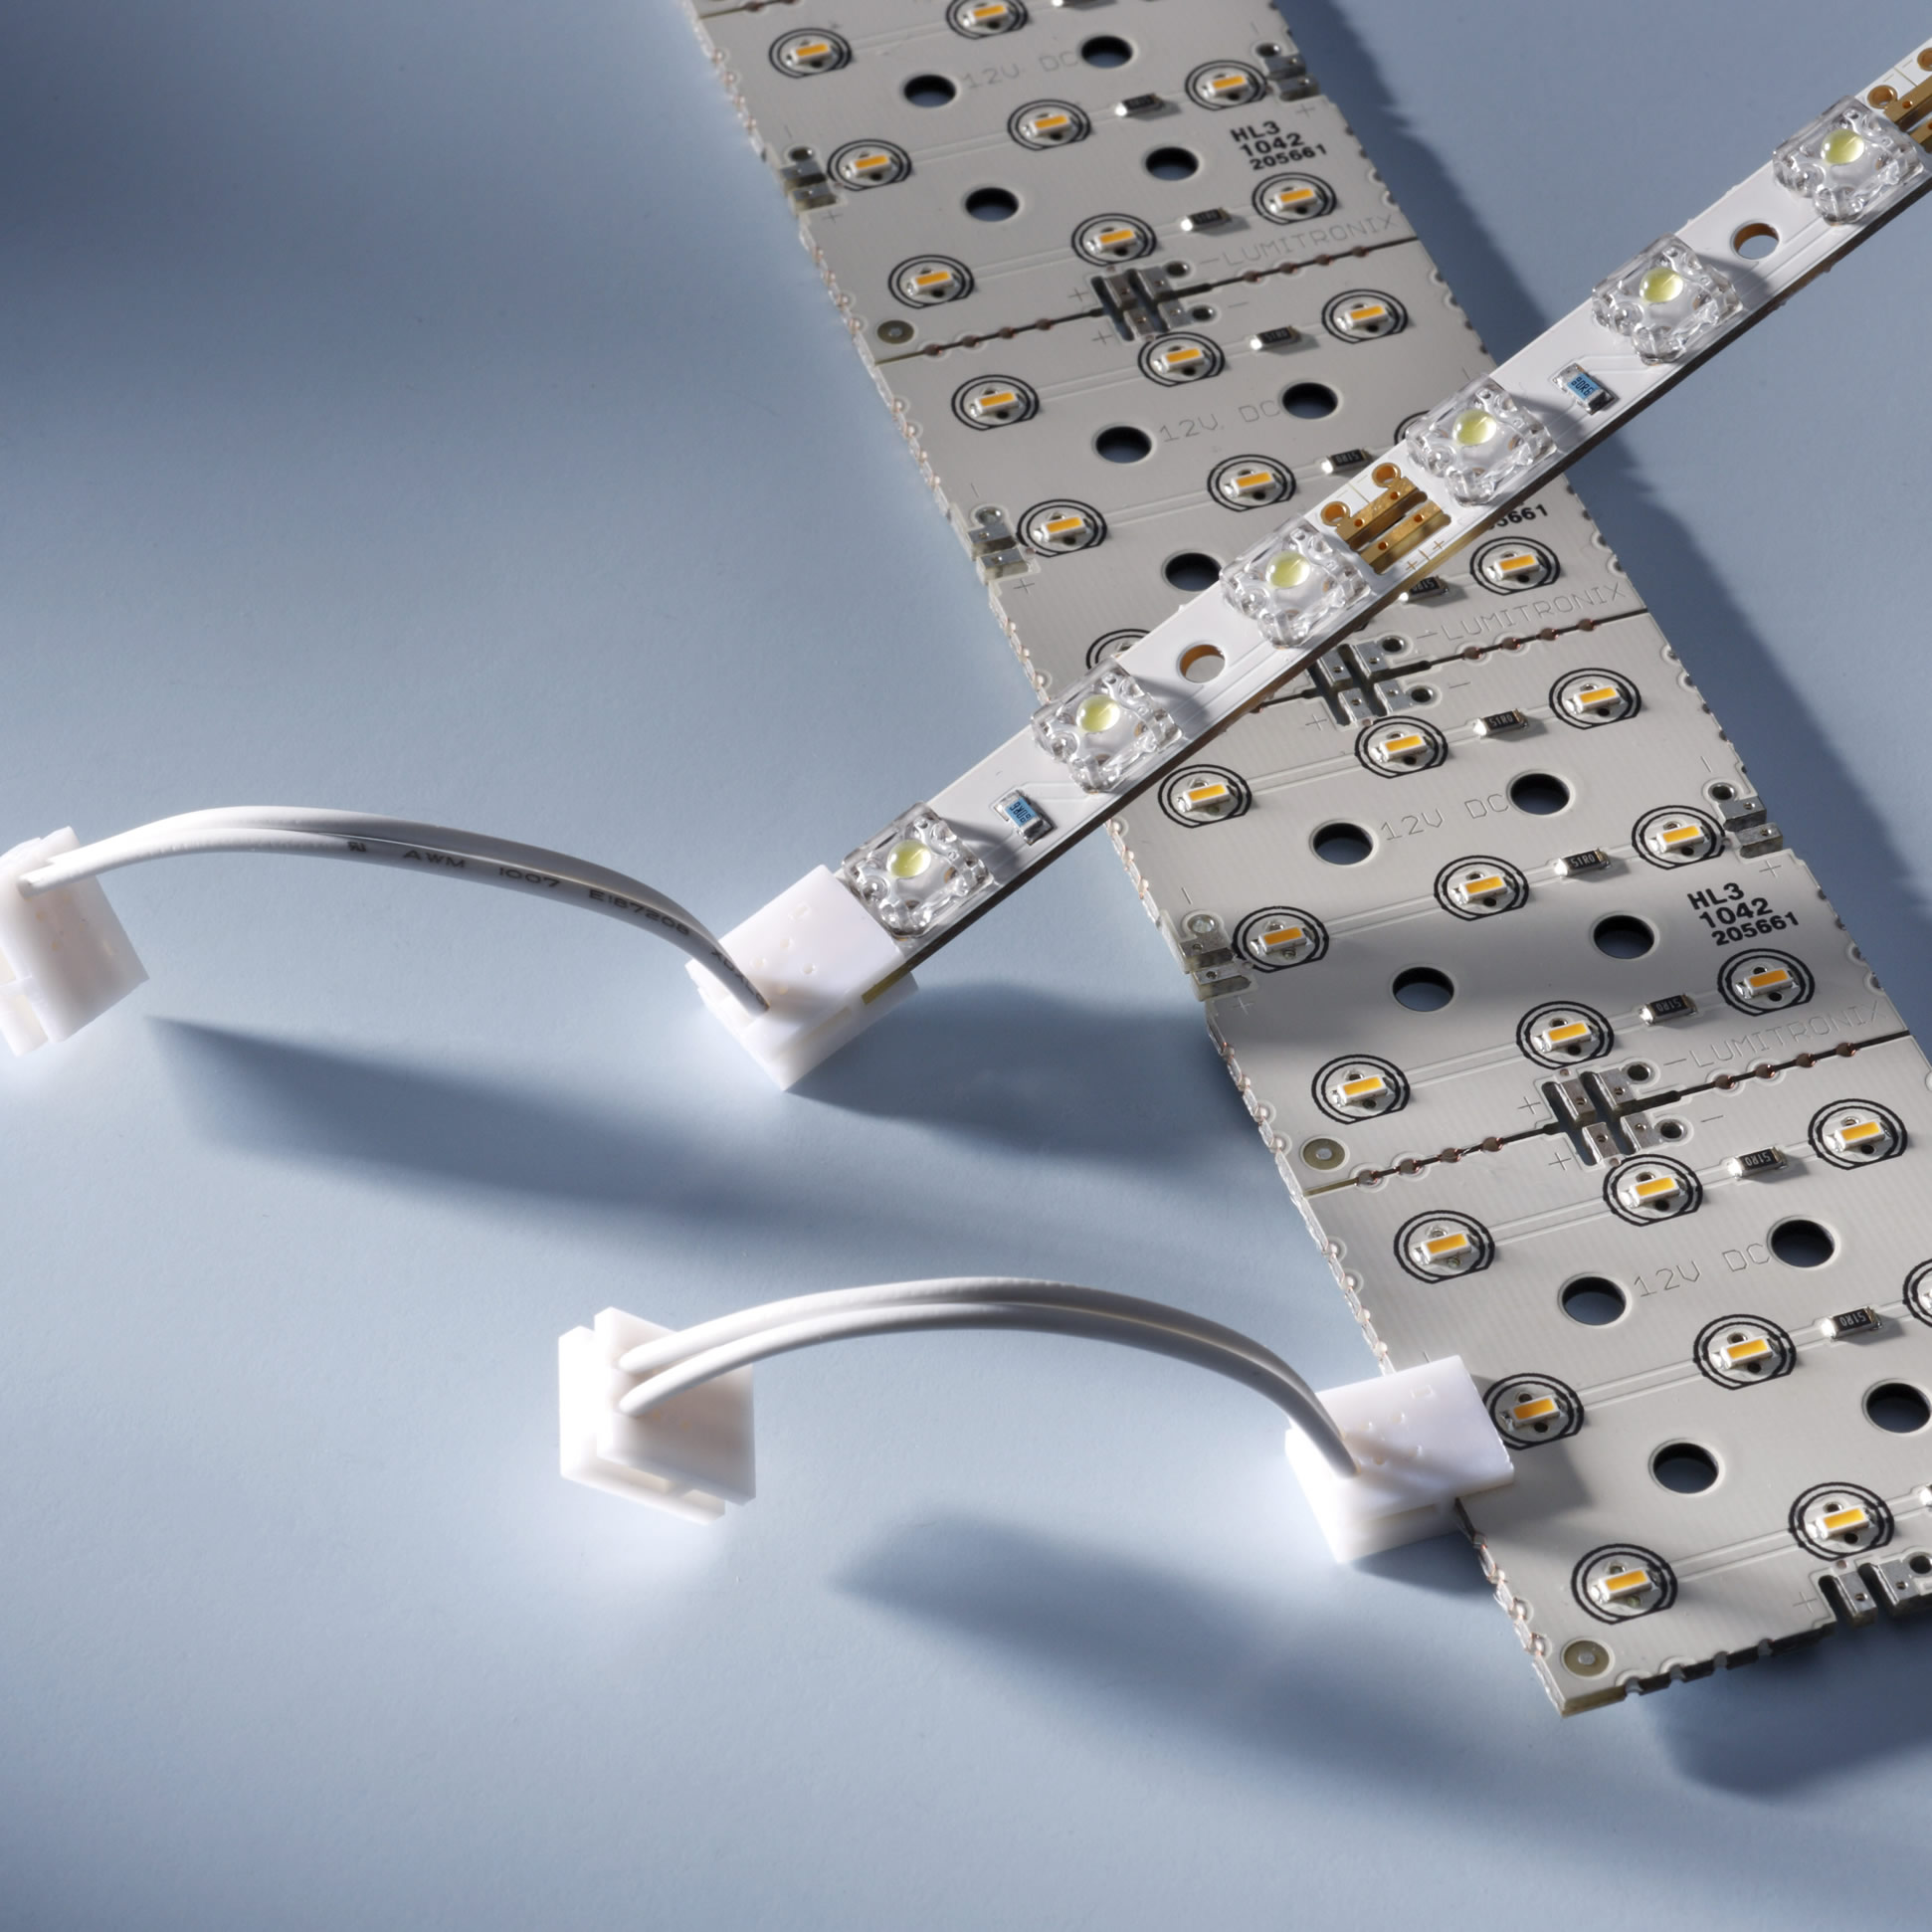 Conector con cable para Matriz LED & MultiBar longitud 100cm